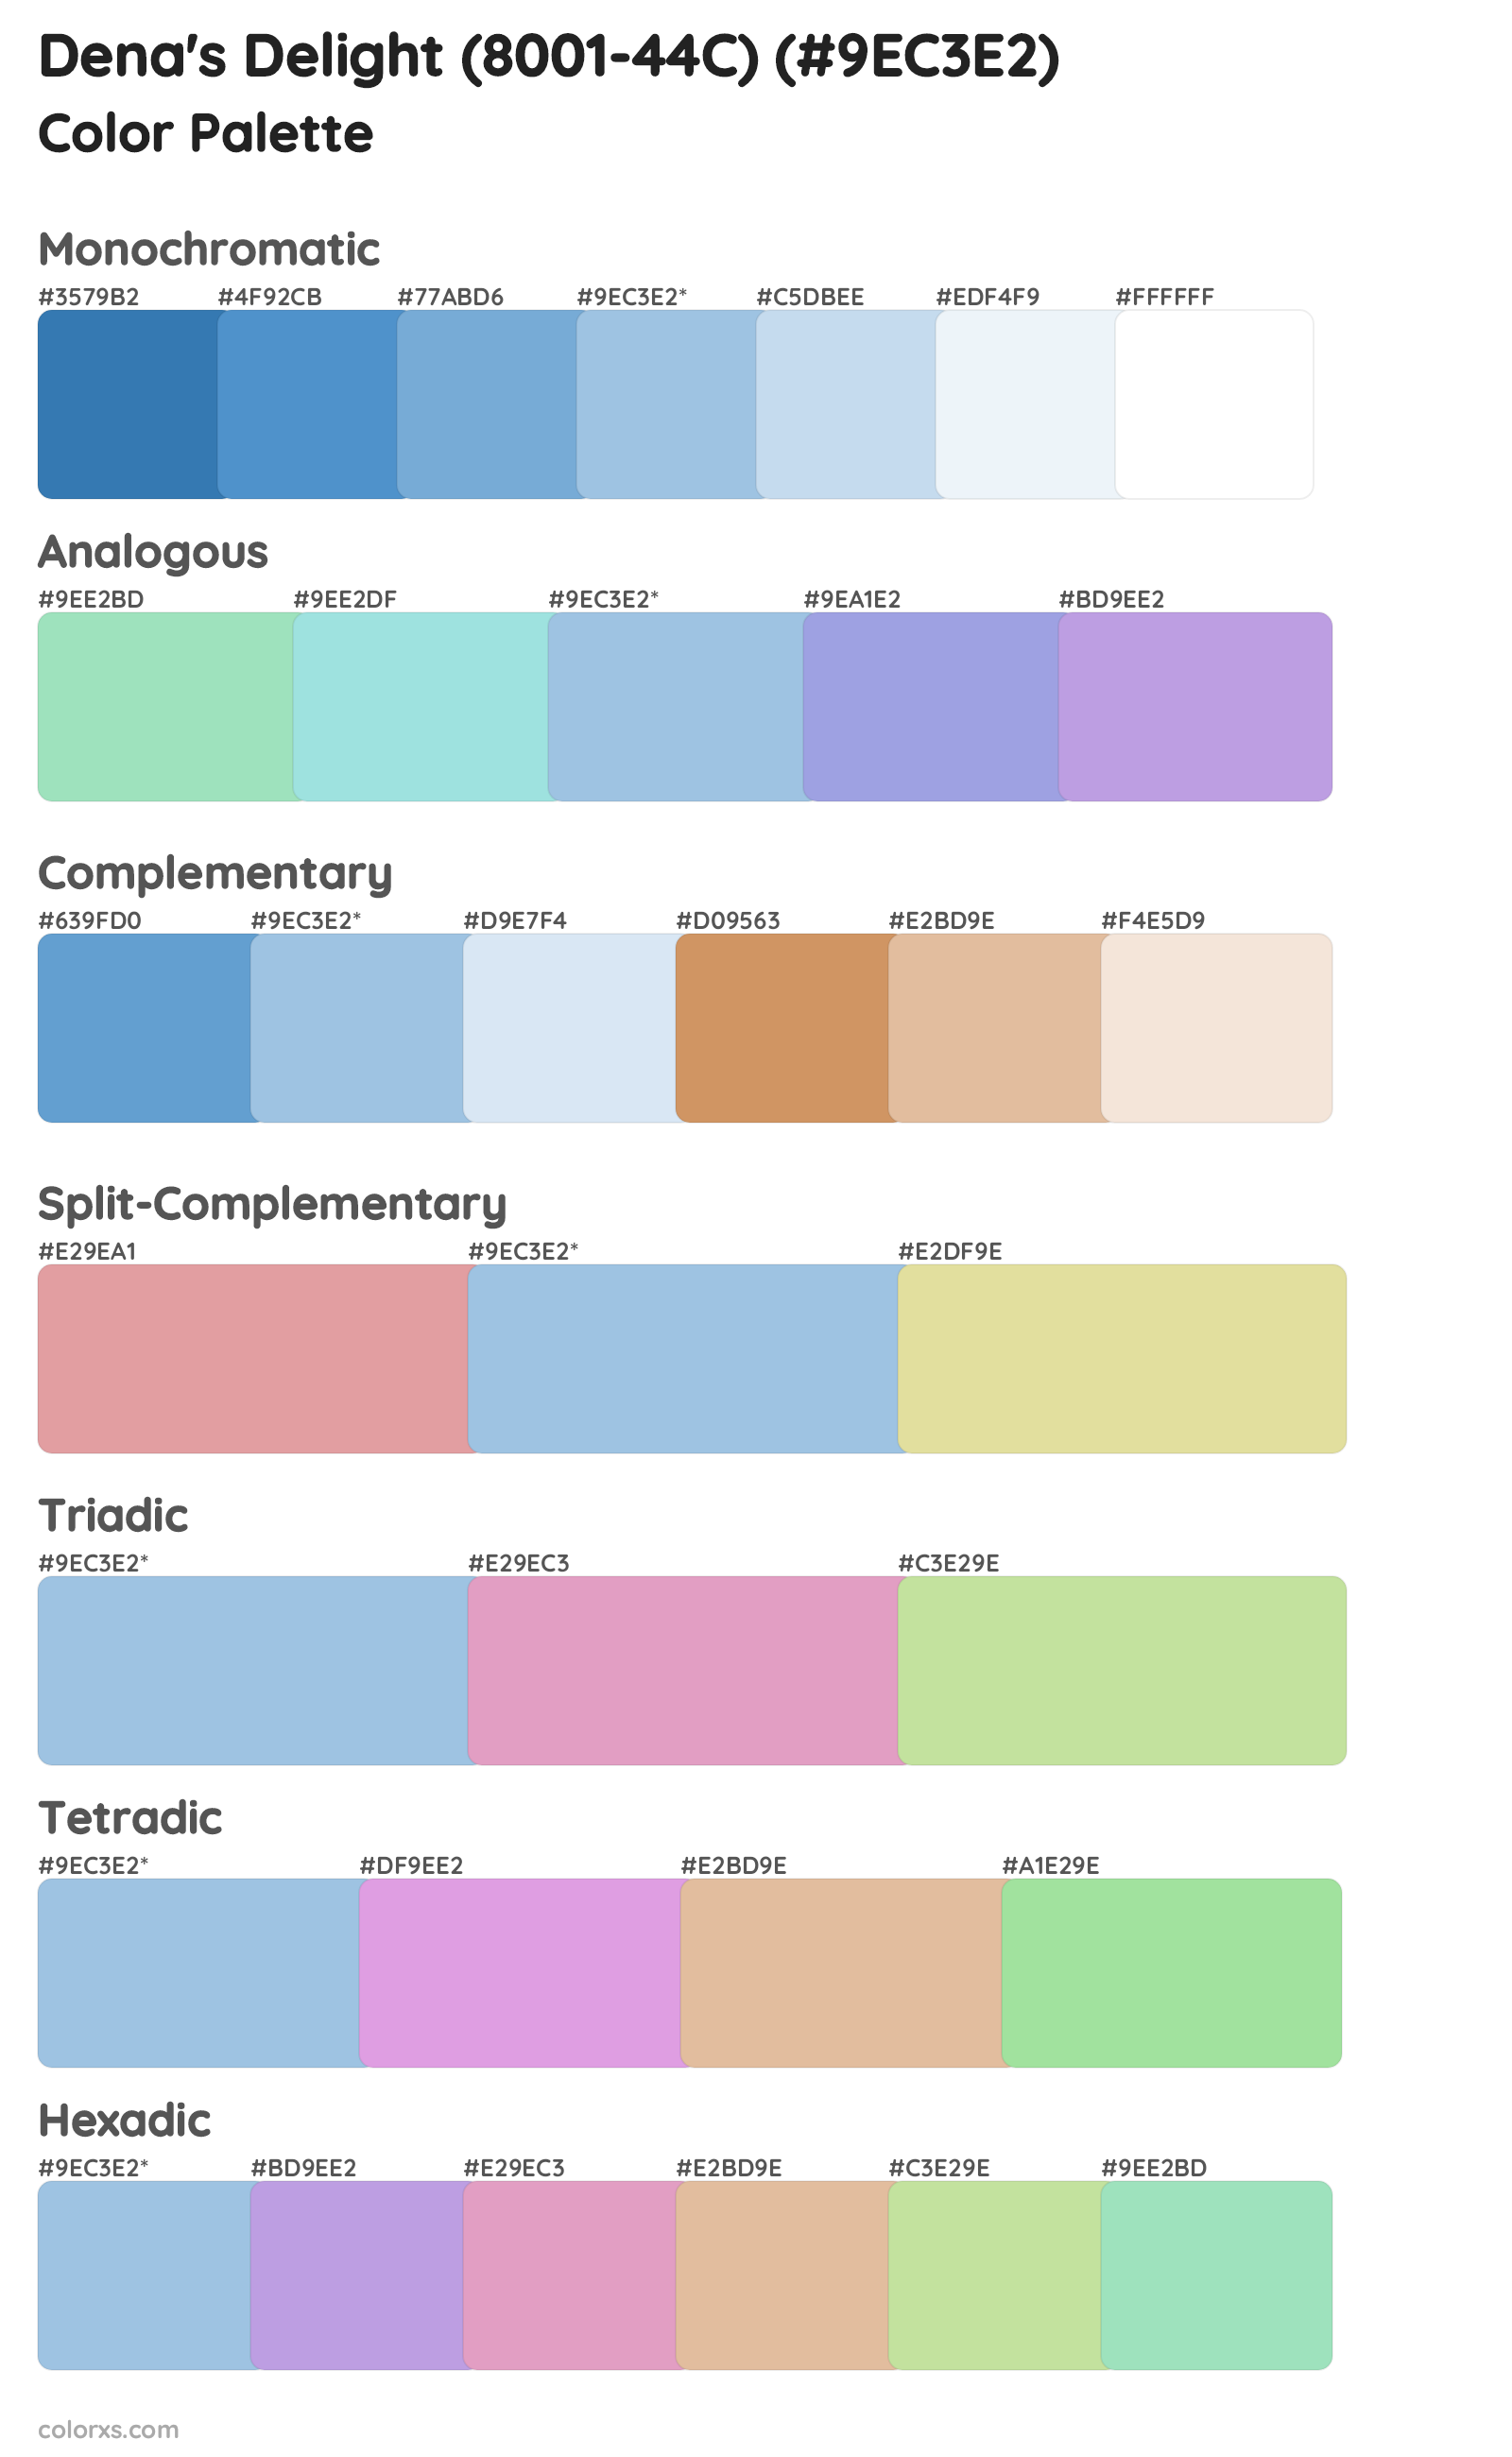 Dena's Delight (8001-44C) Color Scheme Palettes